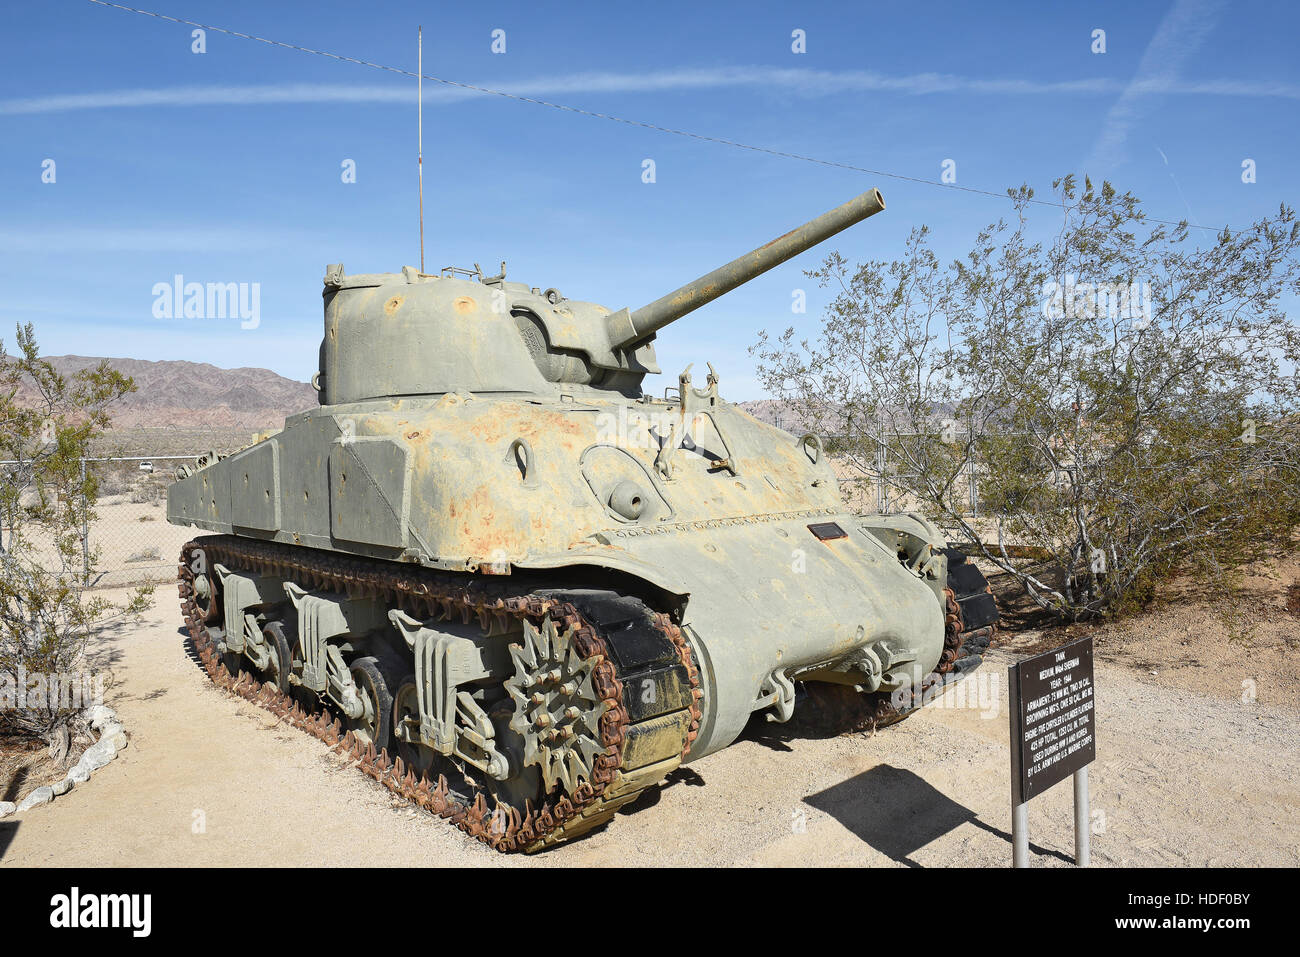 CHIRIACO SUMMIT, CA - Dicembre 10, 2016: UN M4a4 Sherman serbatoio. Il 1944 WWII serbatoio, utilizzato anche in Corea è in mostra presso il Generale Patton Foto Stock